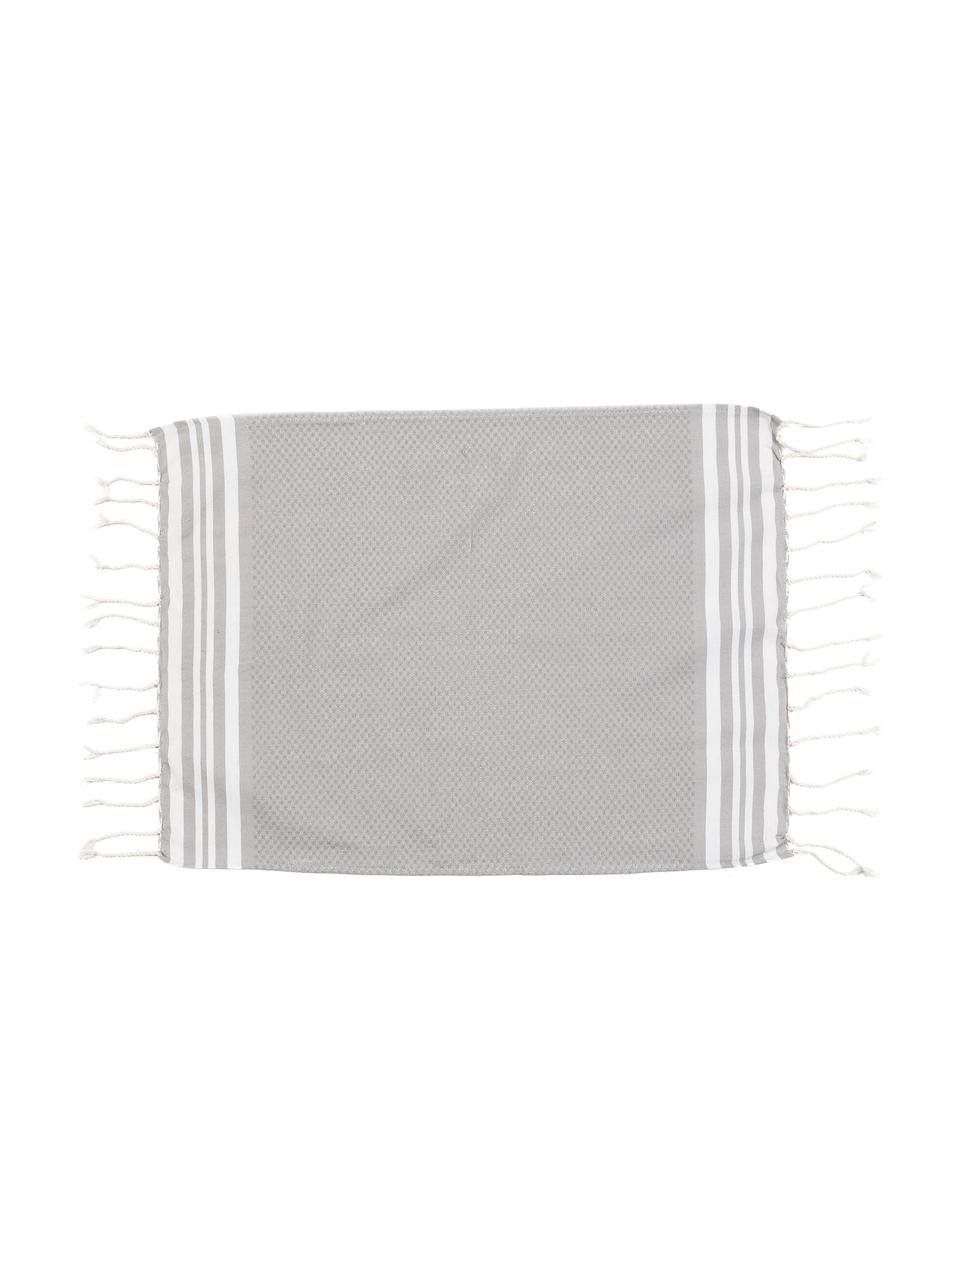 Súprava ľahkých uterákov Hamptons, 3 diely, Perlovo sivá, biela